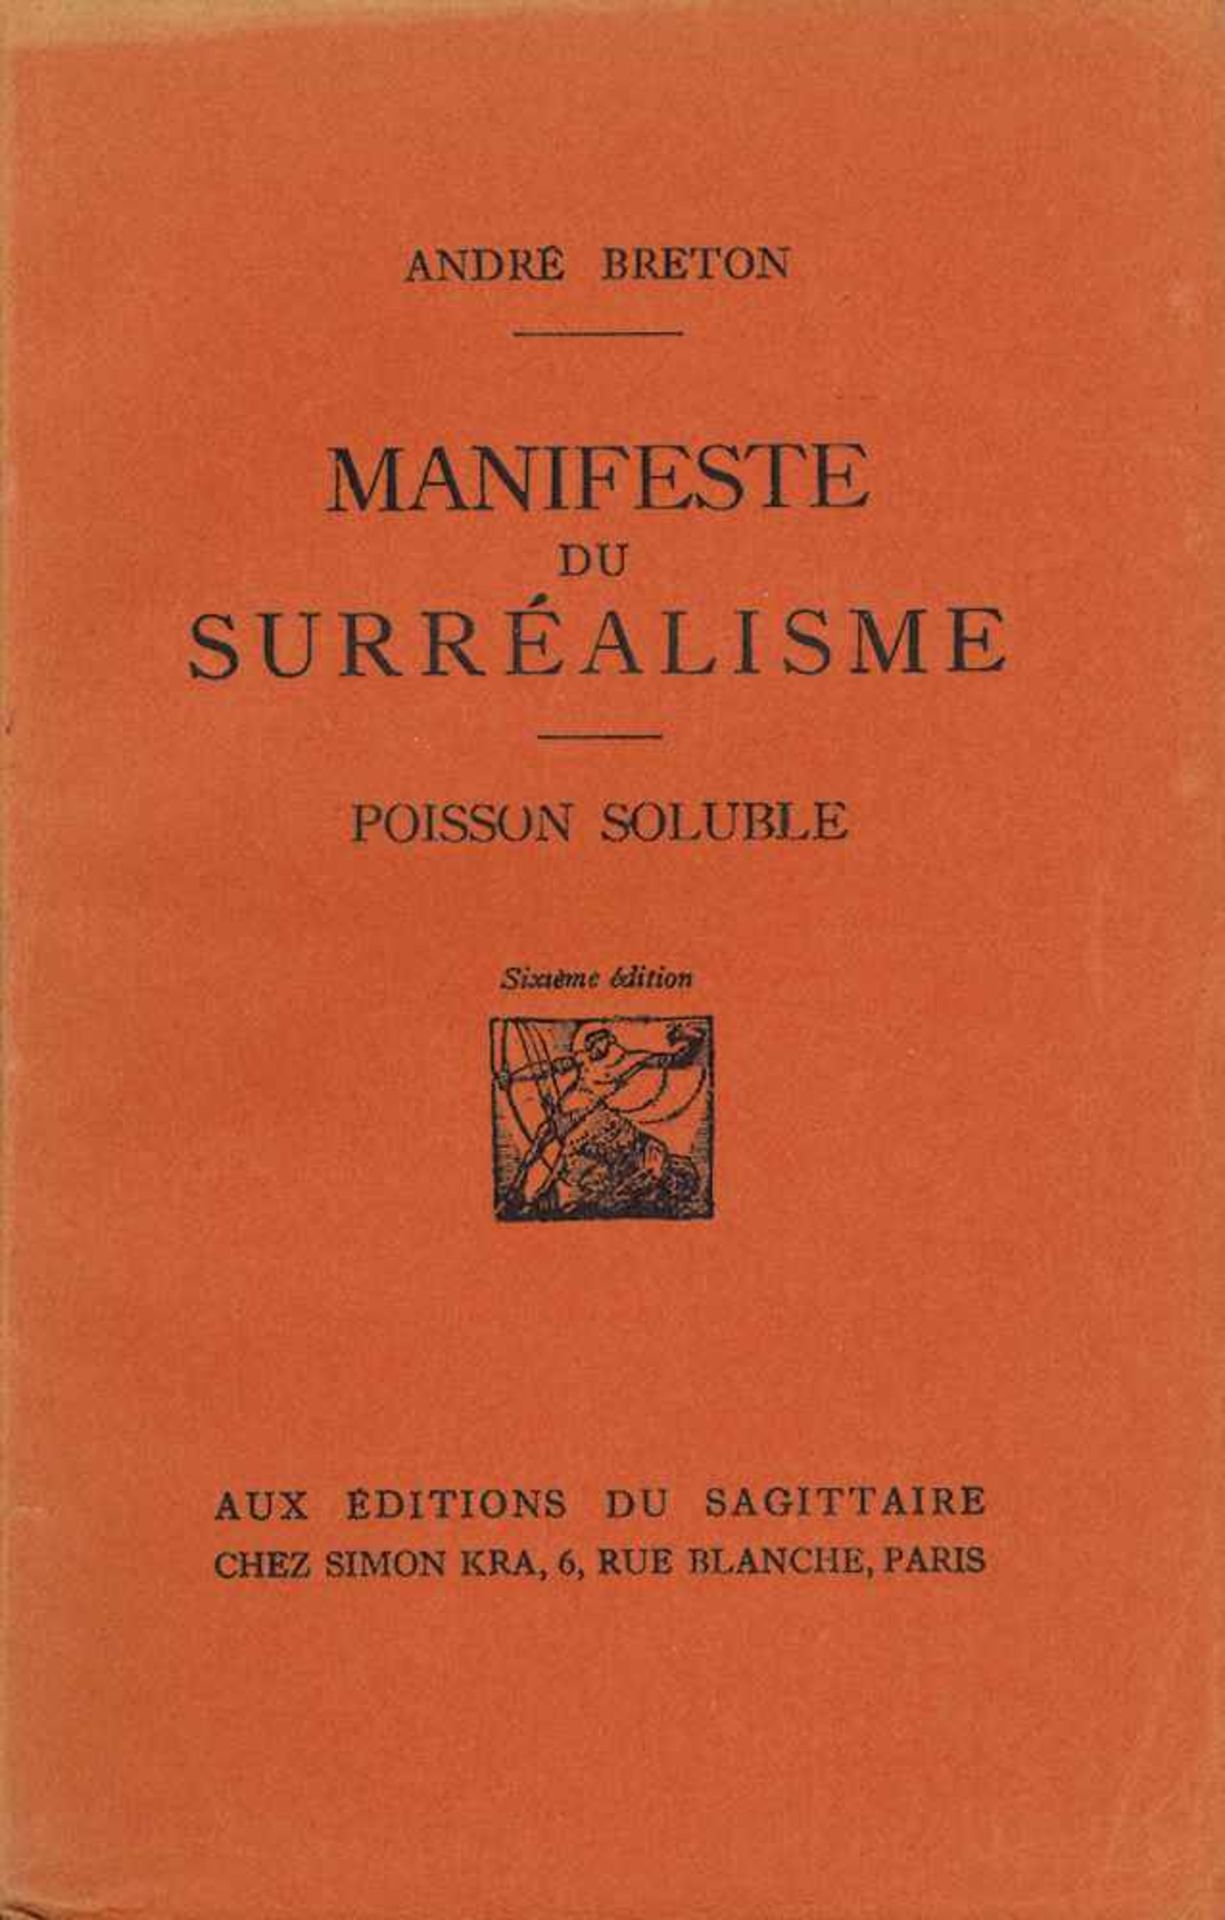 Breton, André: Manifeste du Surréalisme Breton, André. Manifeste du Surréalisme. Poisson soluble.